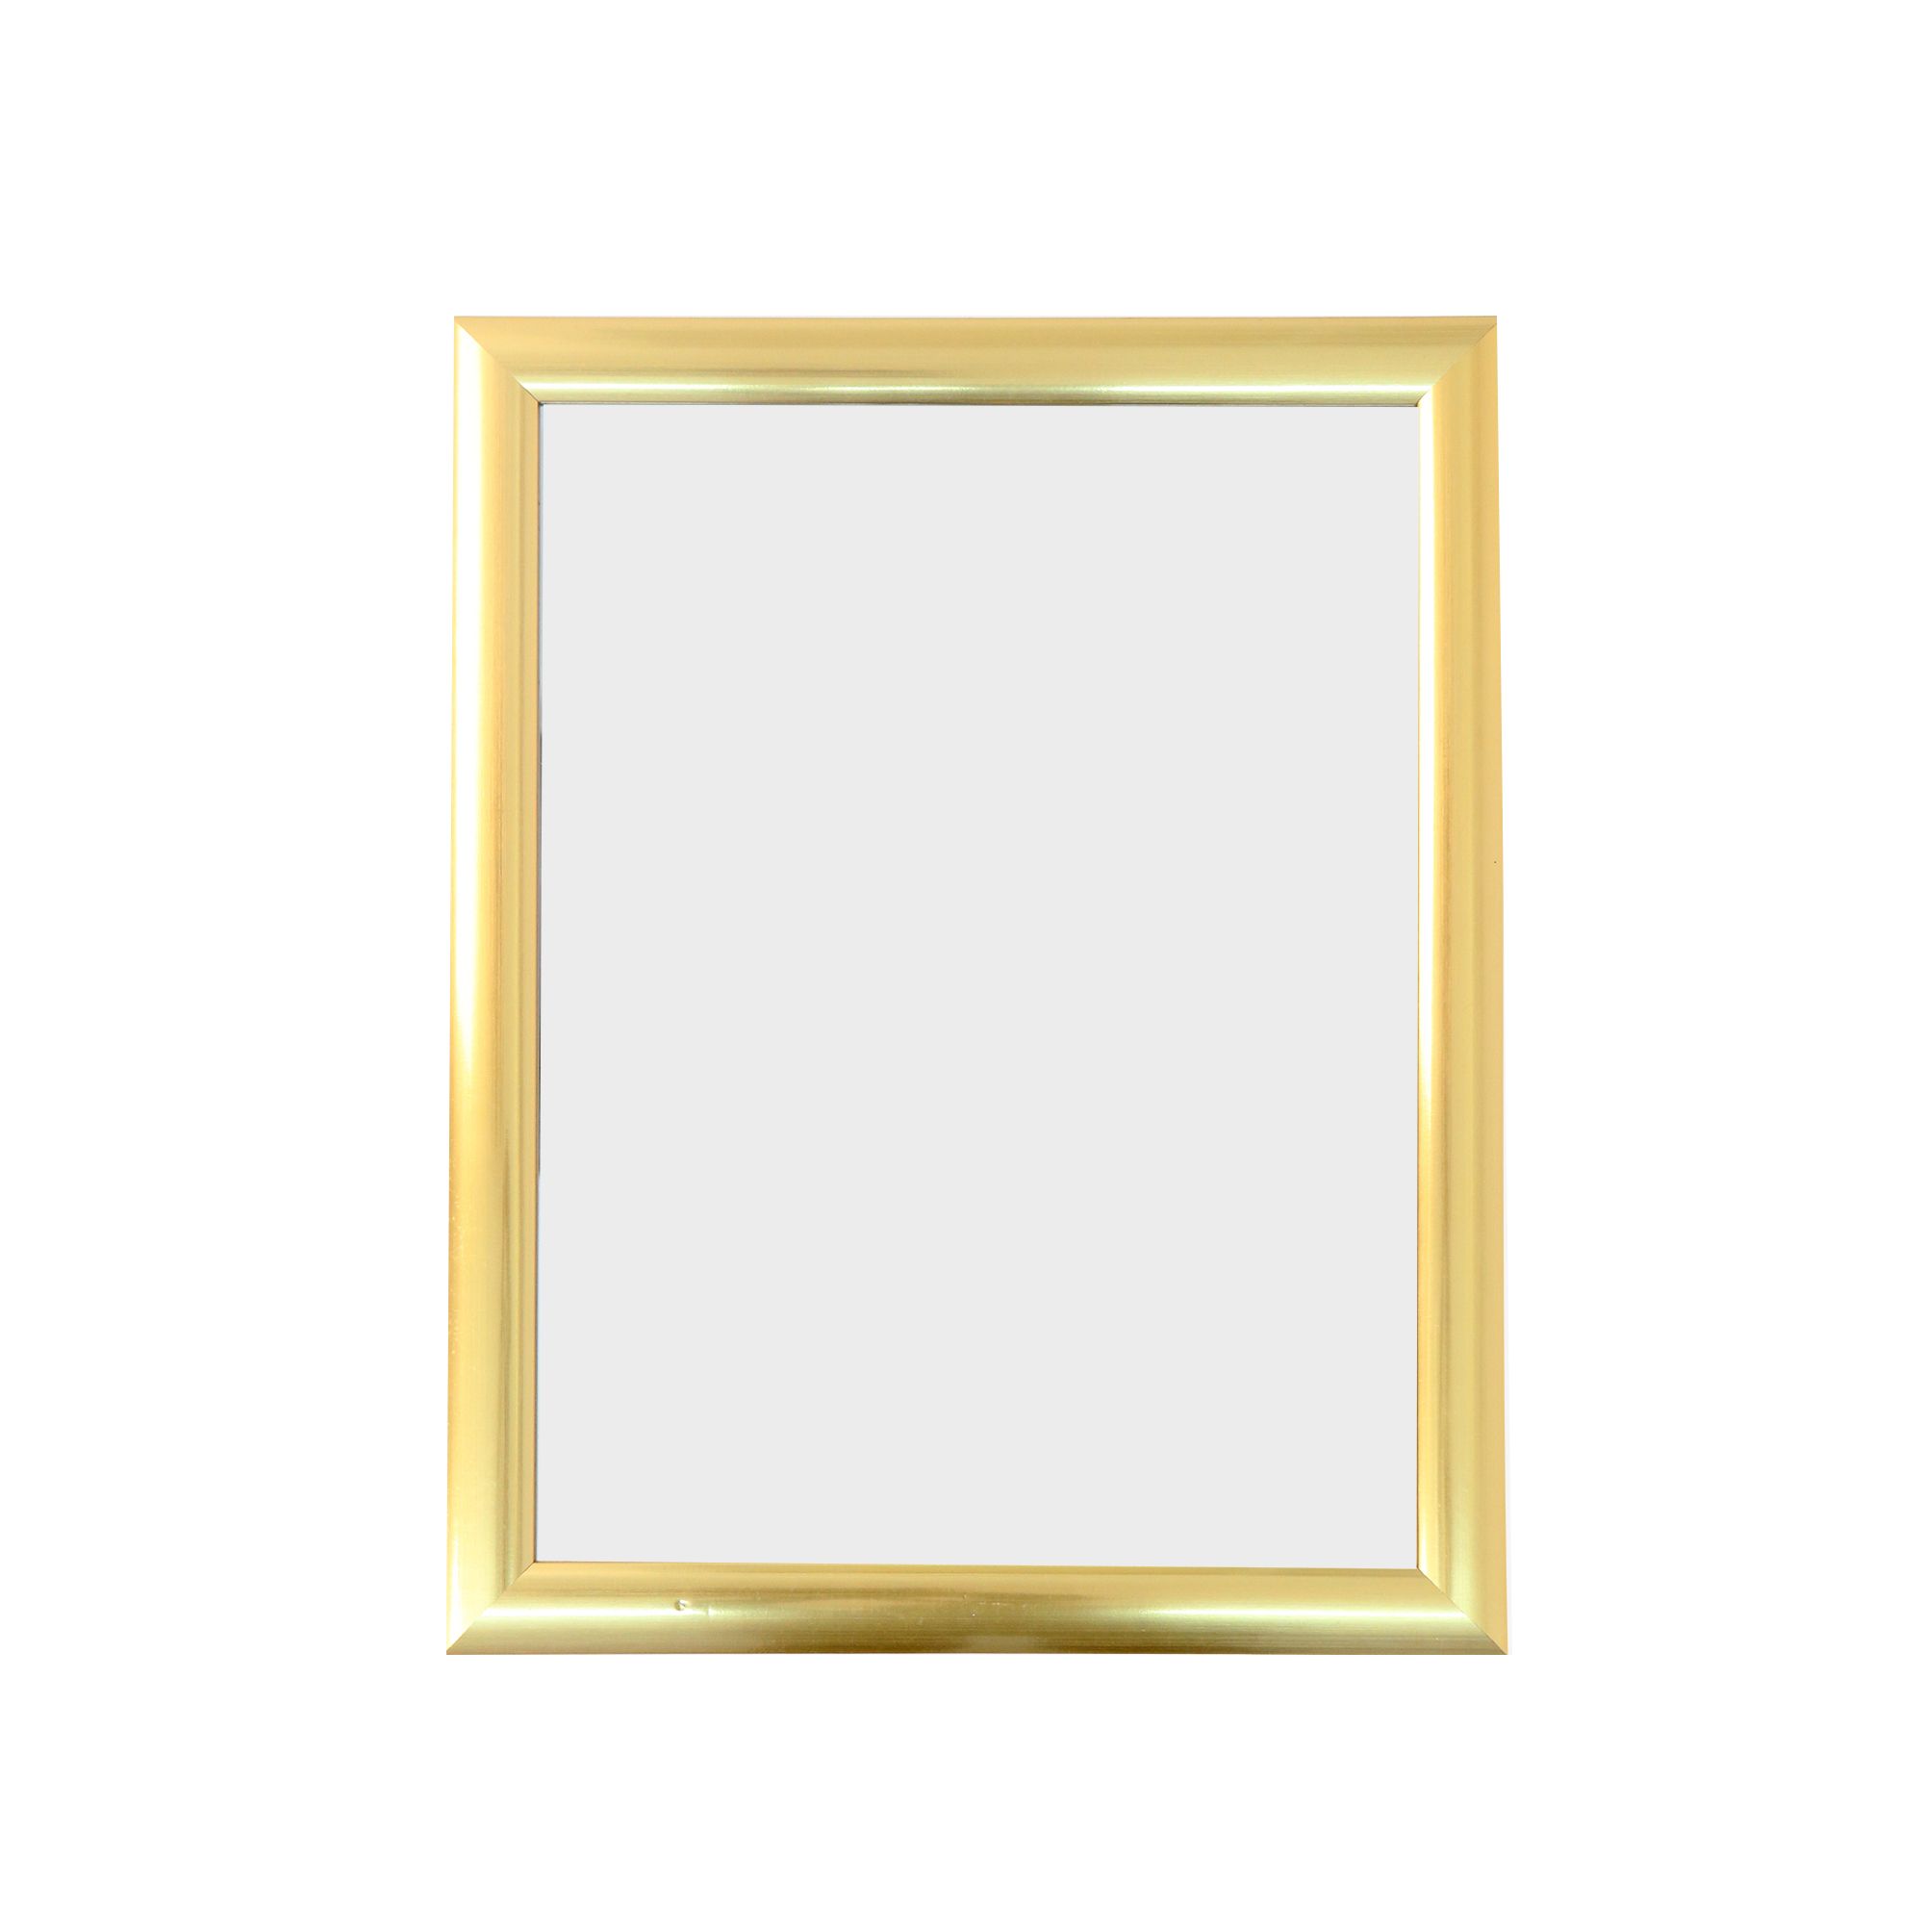 Rectangular Wall Mirrors Pertaining To Favorite Rectangular Wall Mirrors (View 10 of 20)